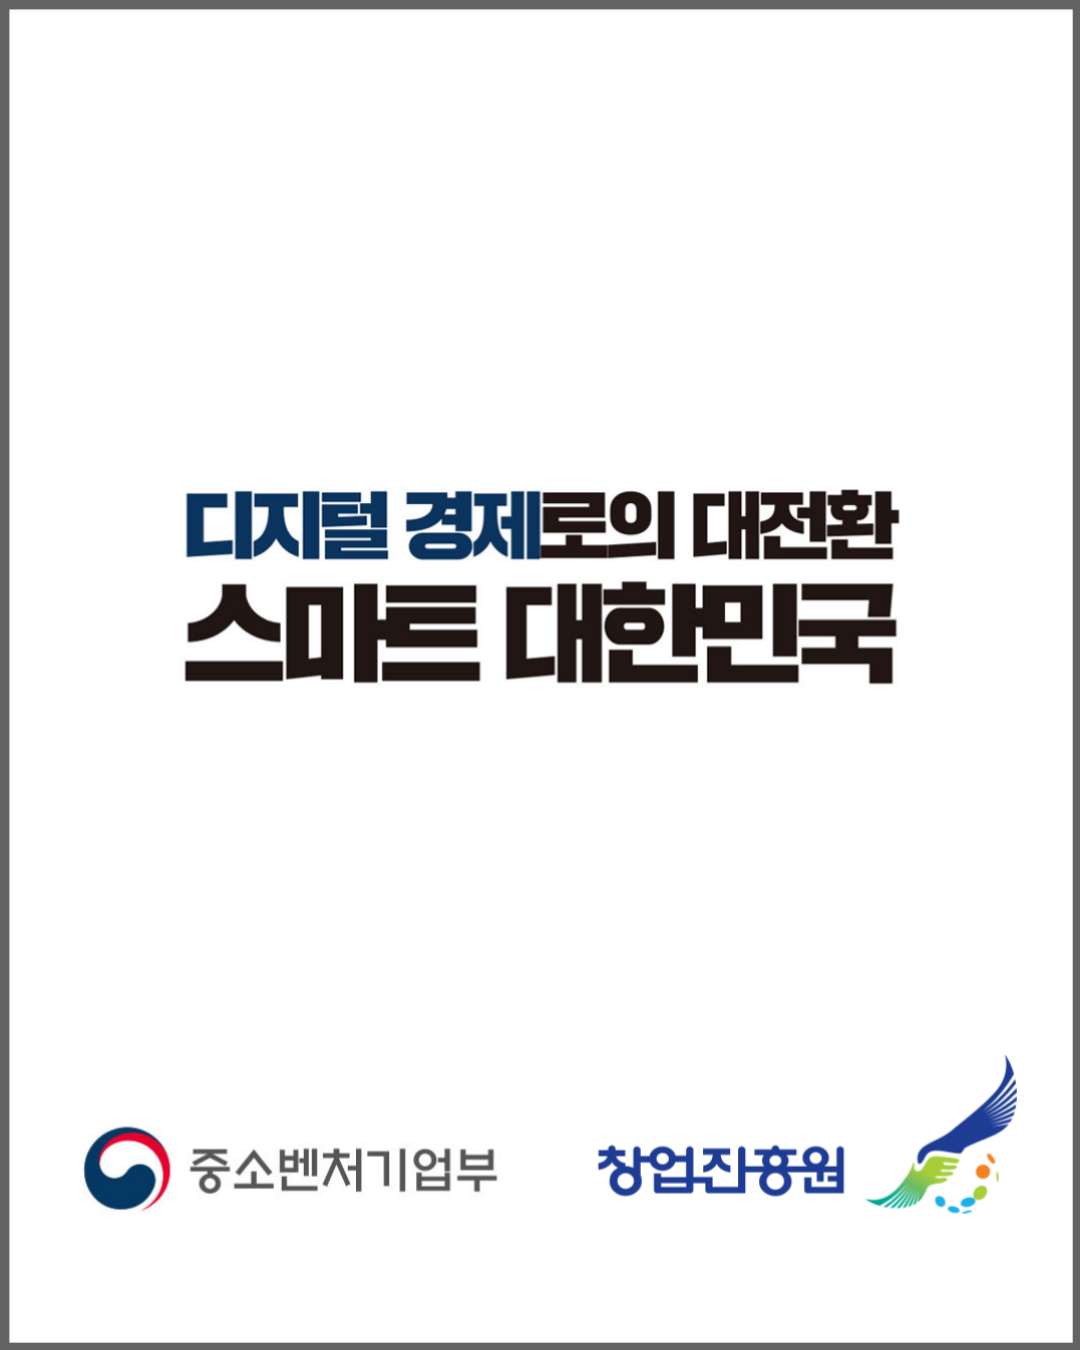 디지털 경제로의 대전환
스마트 대한민국
중소벤처기업부
창업진흥원